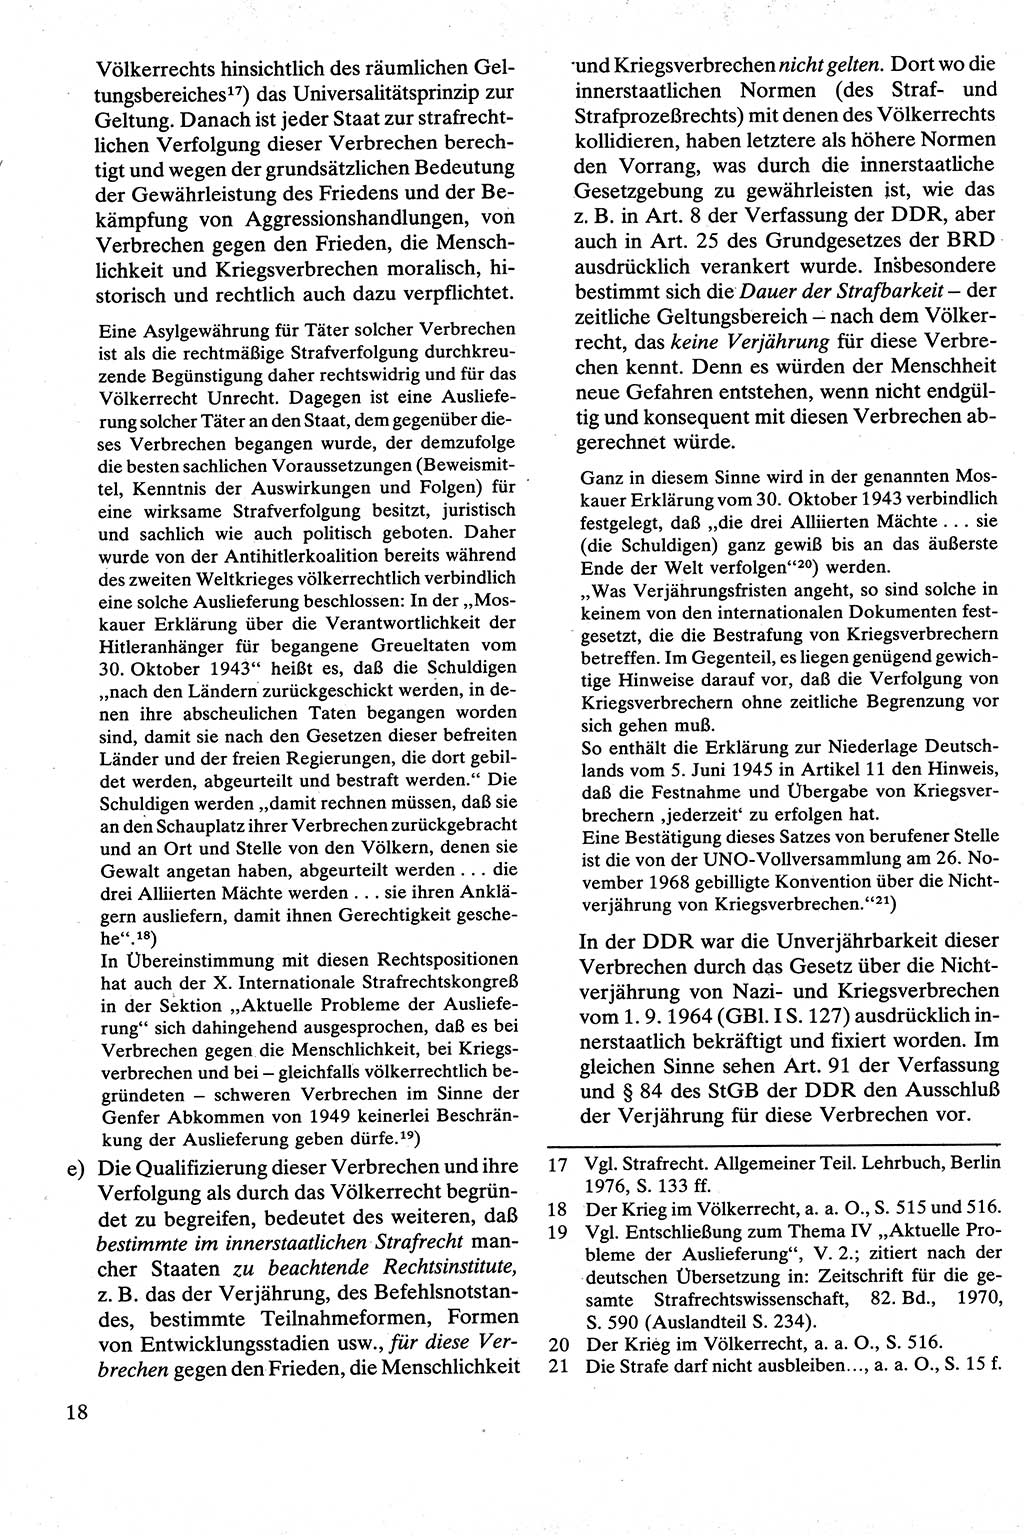 Strafrecht [Deutsche Demokratische Republik (DDR)], Besonderer Teil, Lehrbuch 1981, Seite 18 (Strafr. DDR BT Lb. 1981, S. 18)